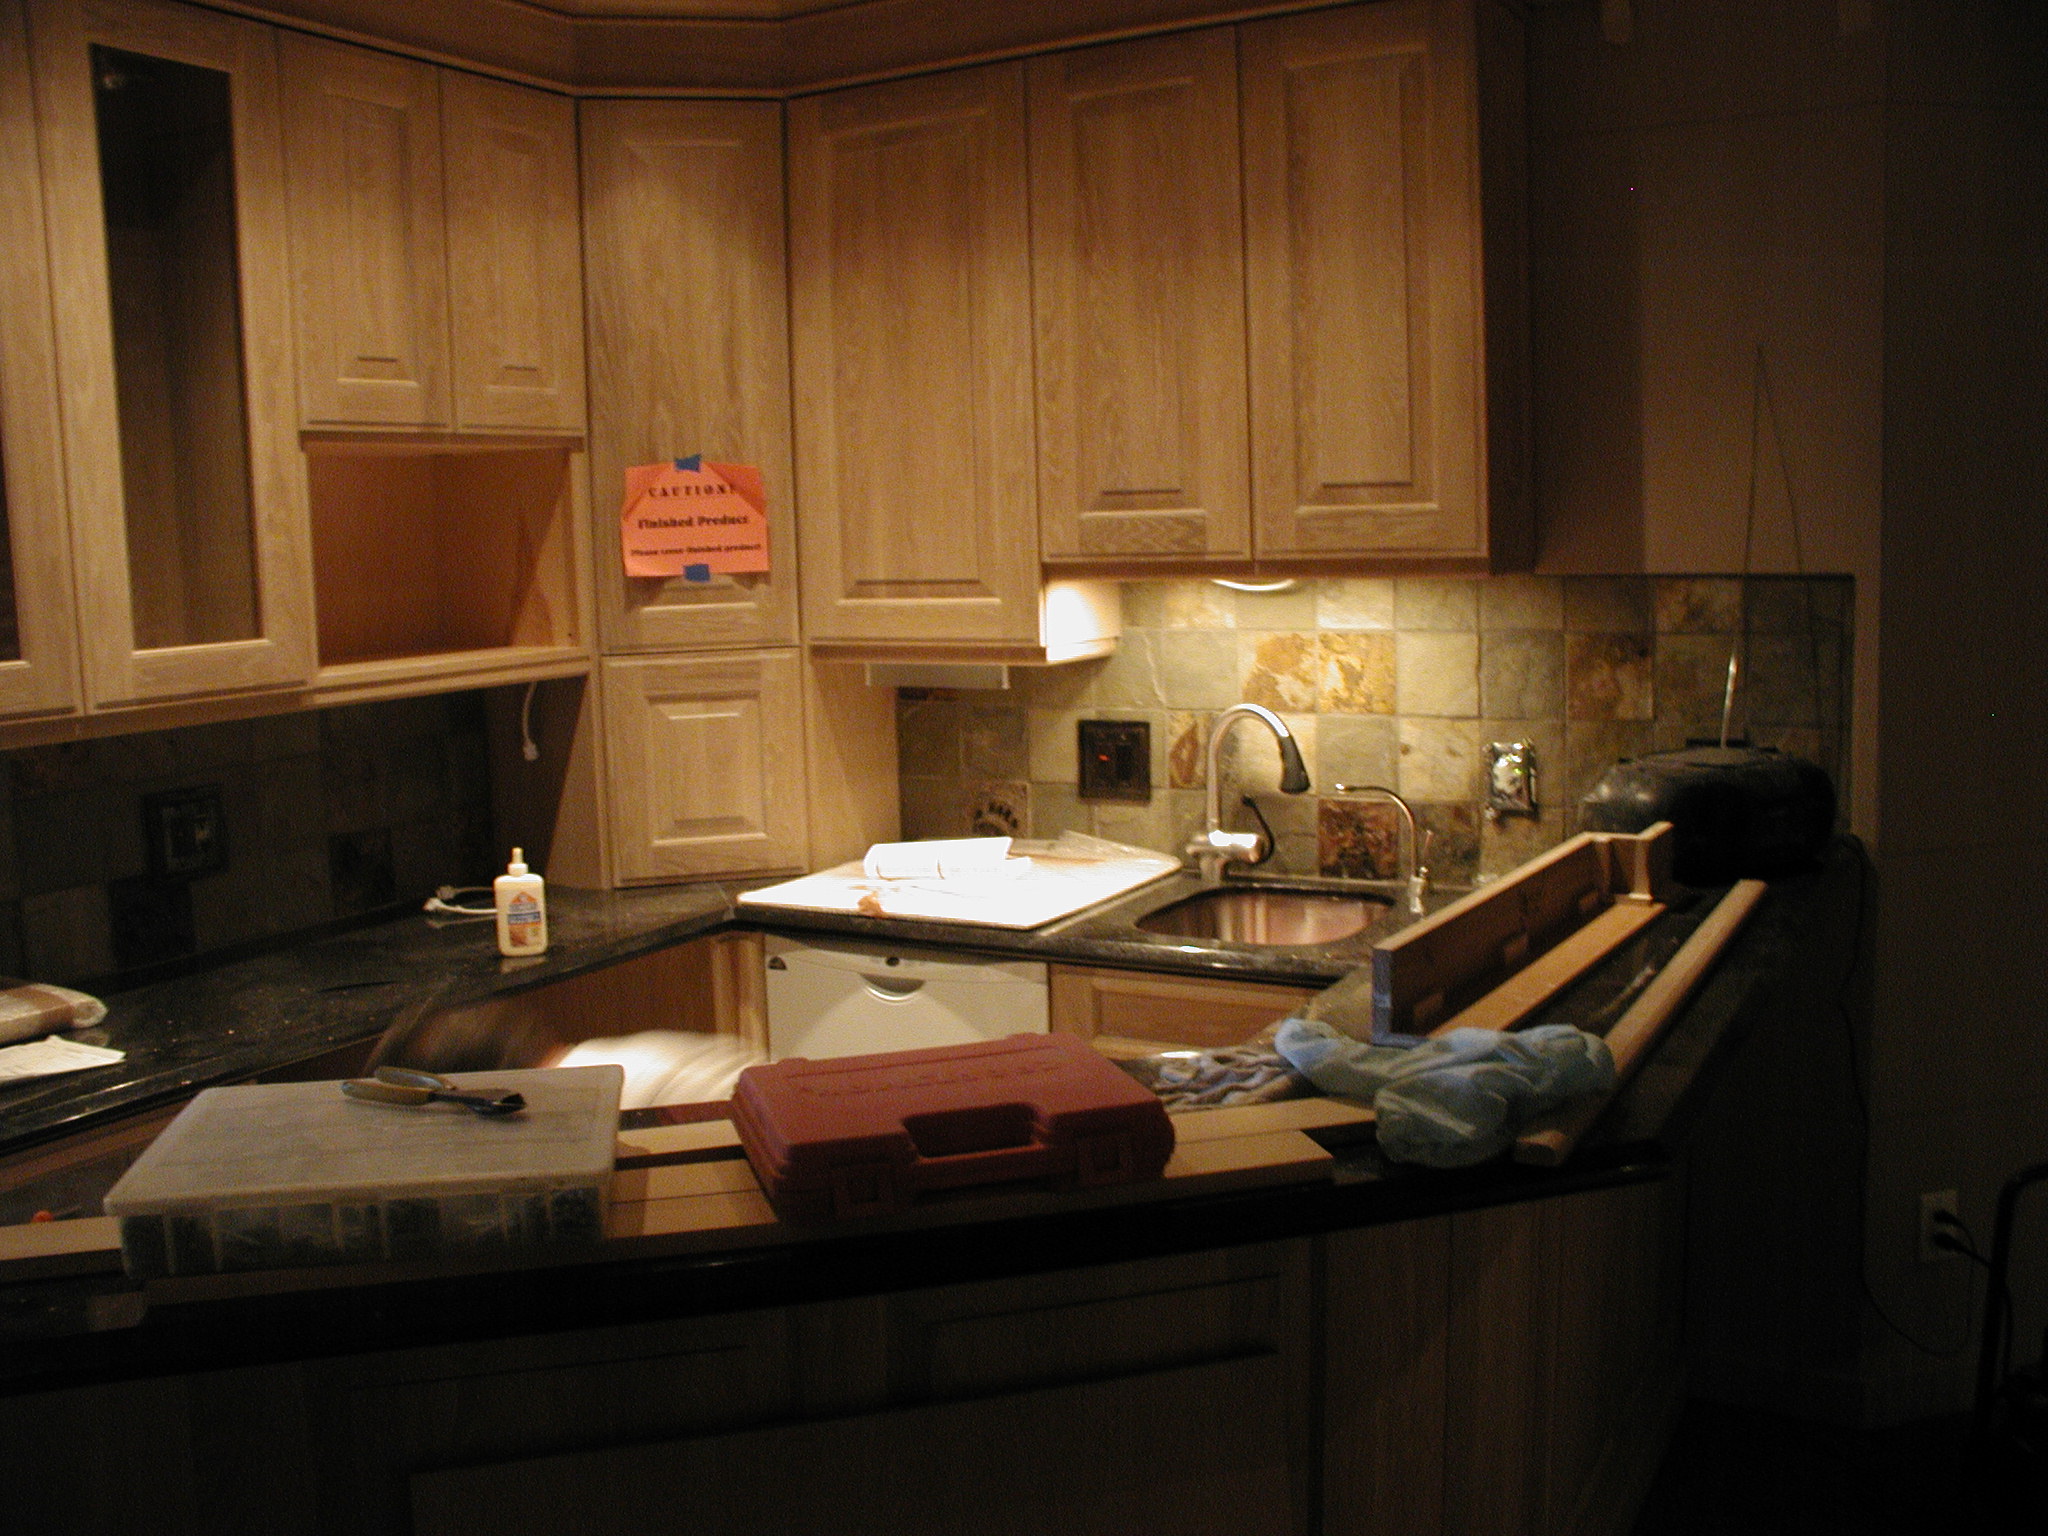 kitchen design in progress image